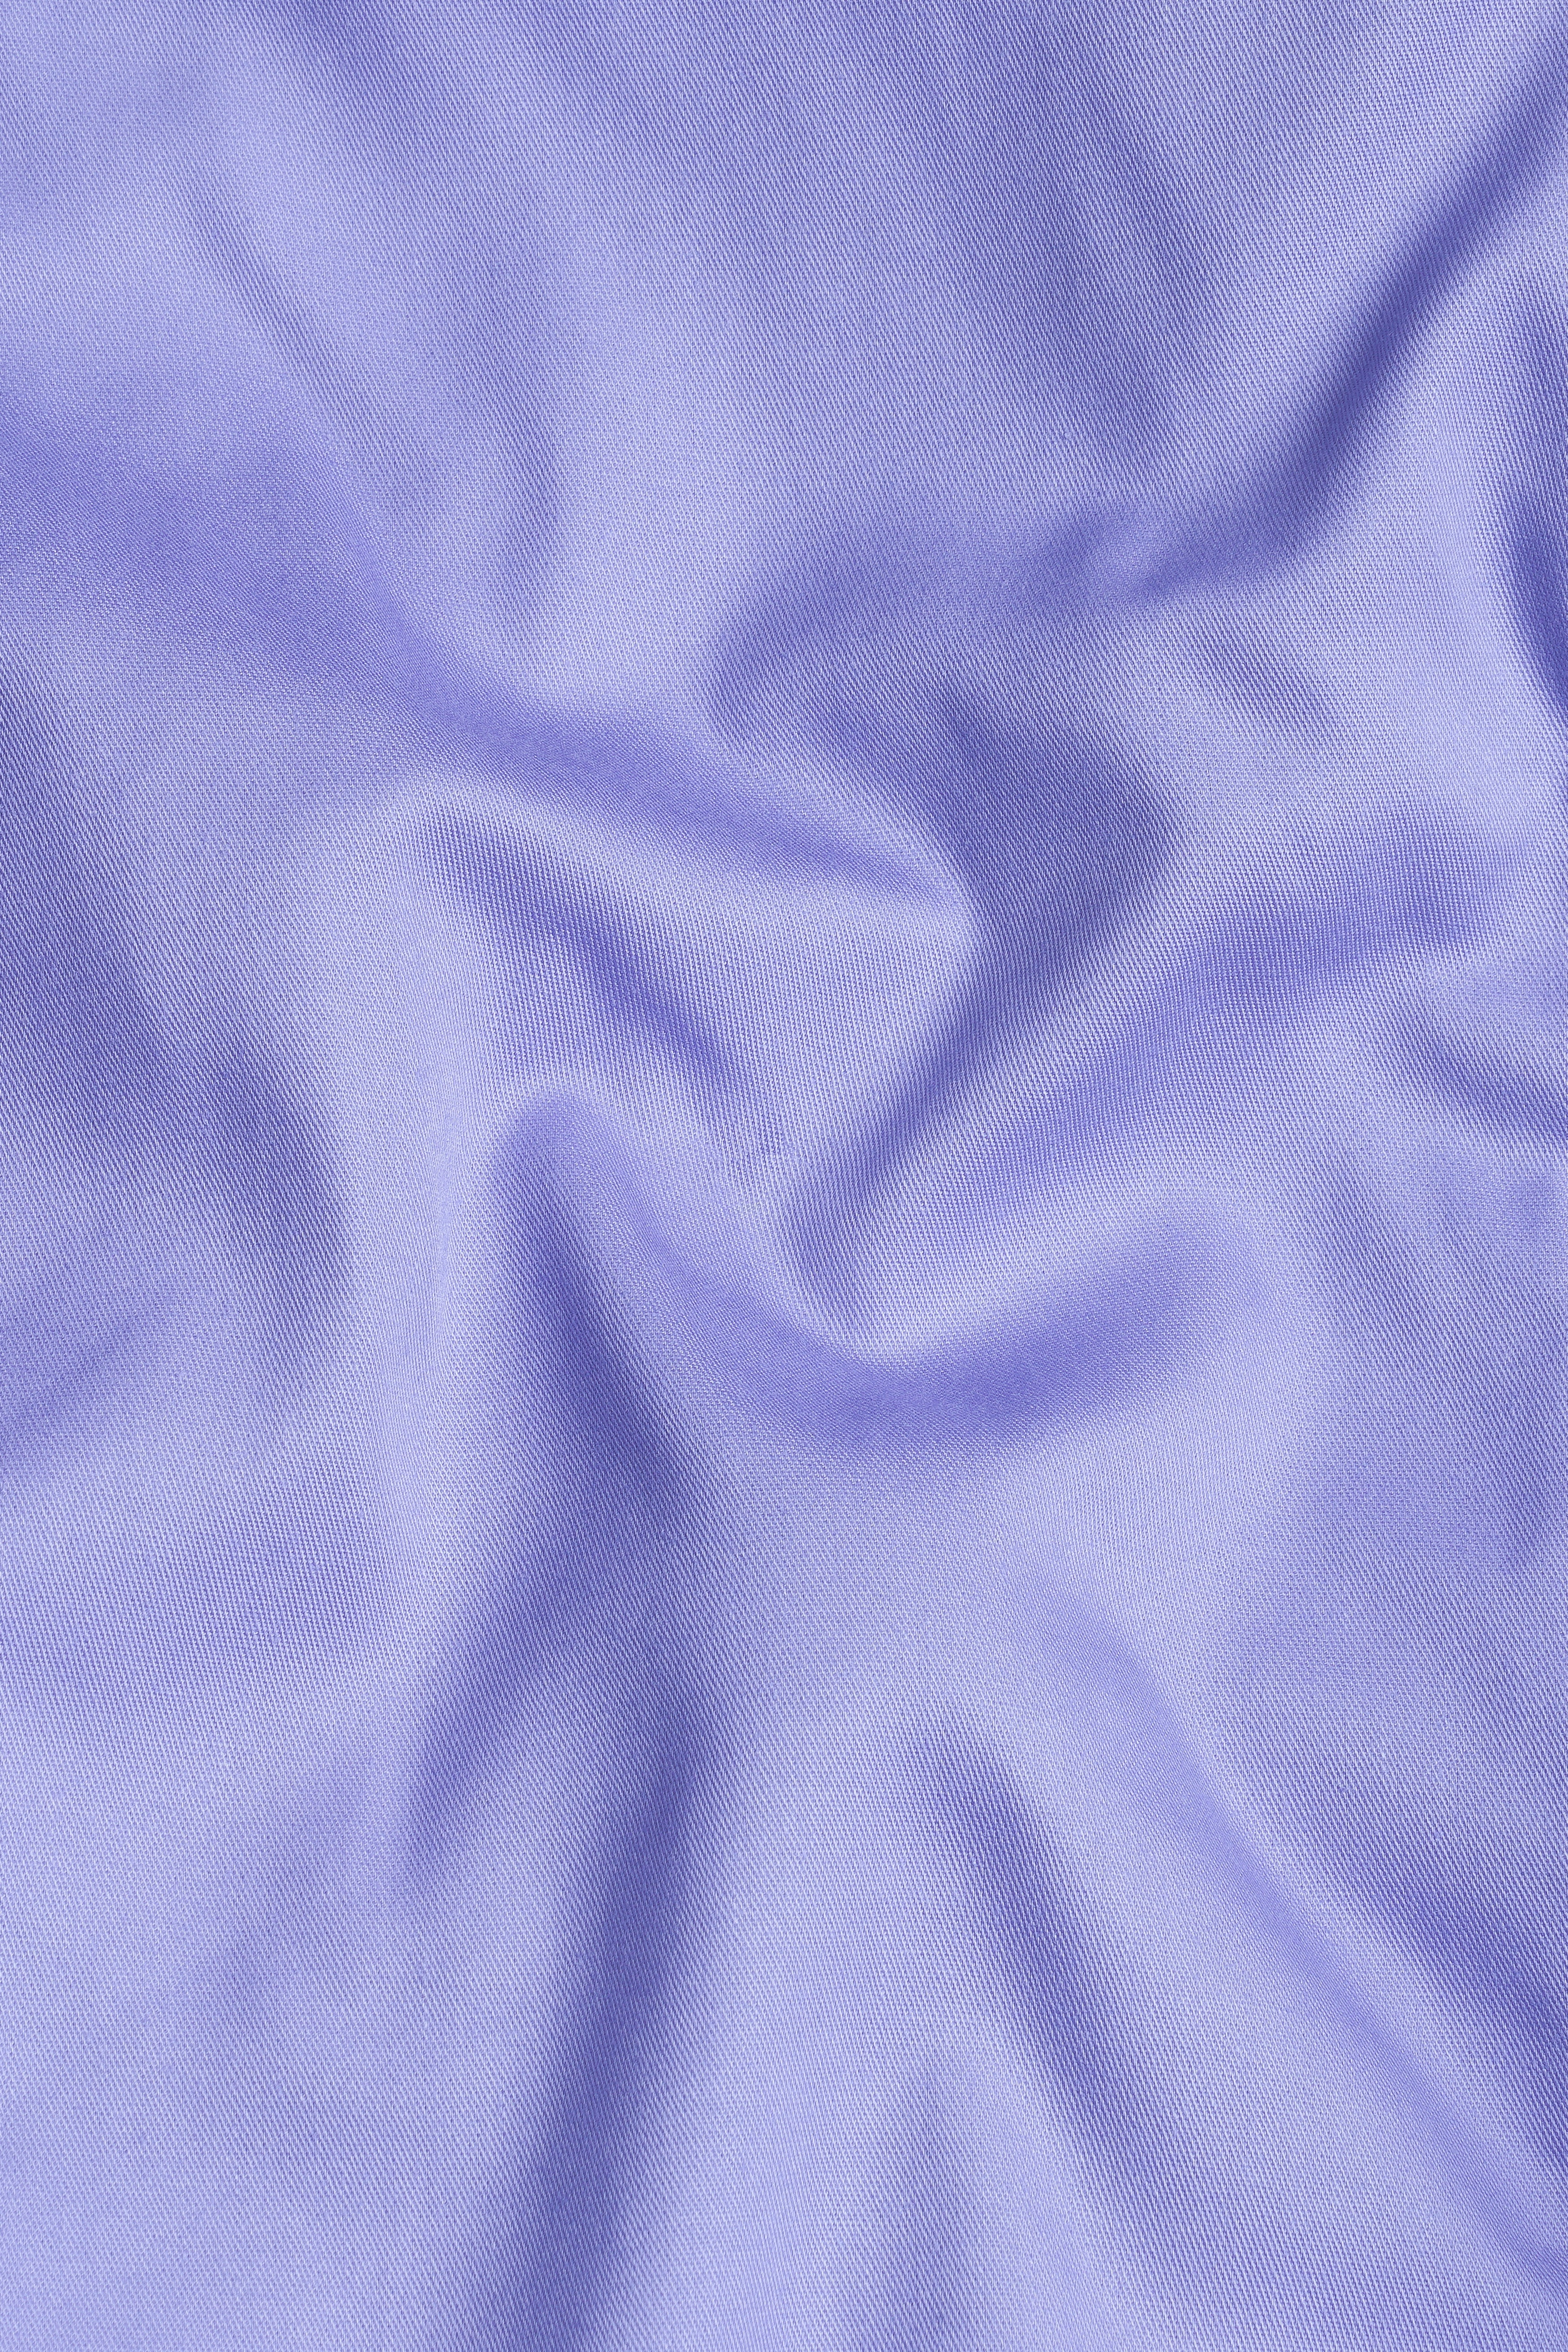 Chetwode Purple Premium Cotton Nehru Jacket WC3049-36, WC3049-38, WC3049-40, WC3049-42, WC3049-44, WC3049-46, WC3049-48, WC3049-50, WC3049-52, WC3049-54, WC3049-56, WC3049-58, WC3049-60